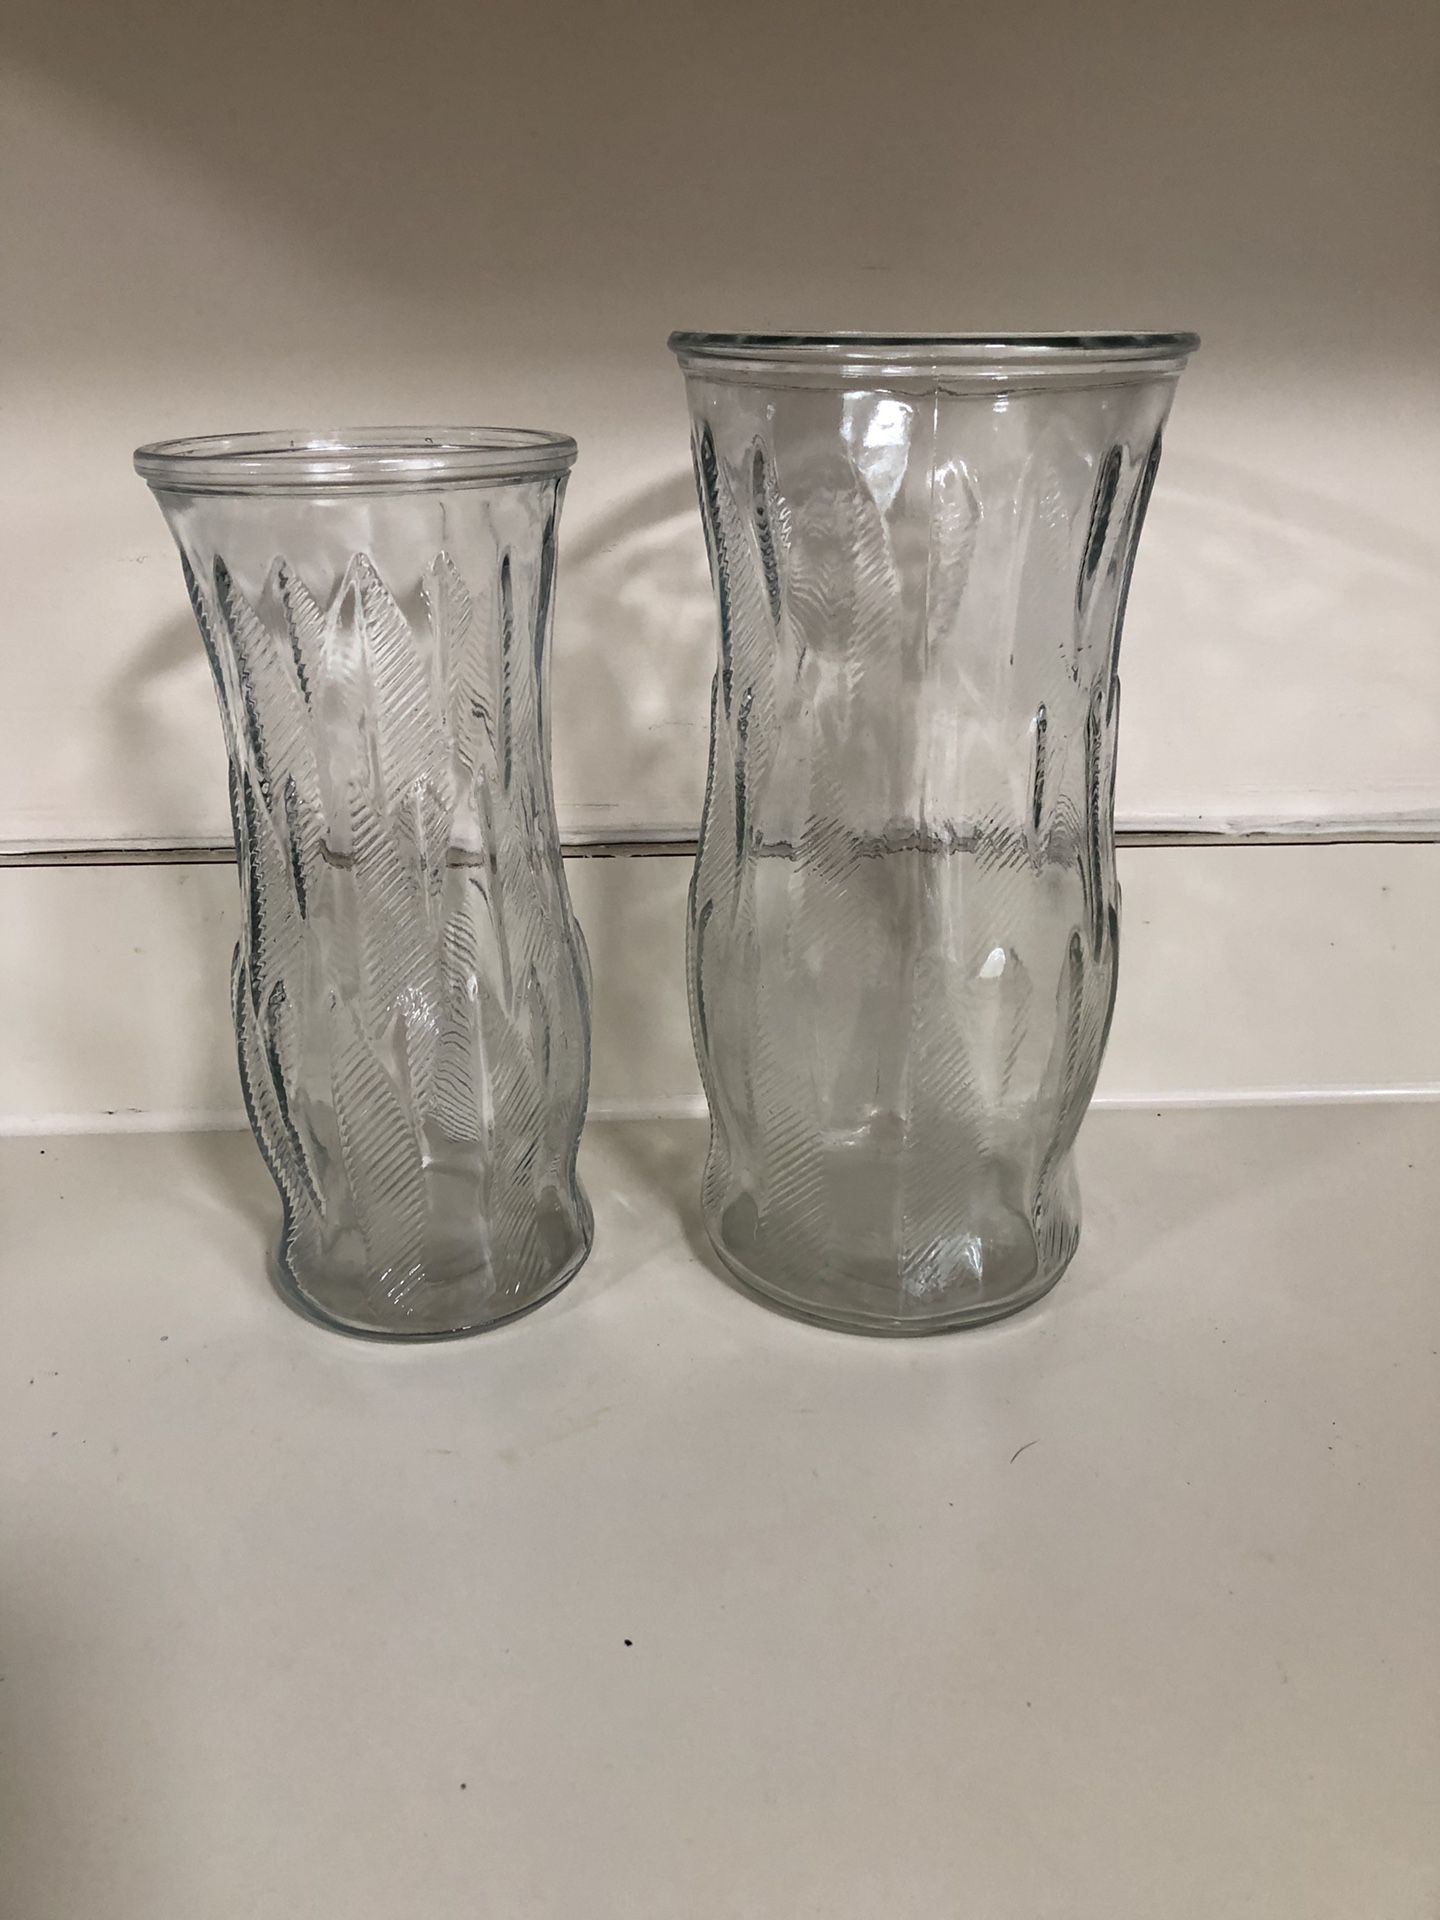 Glass flower pots